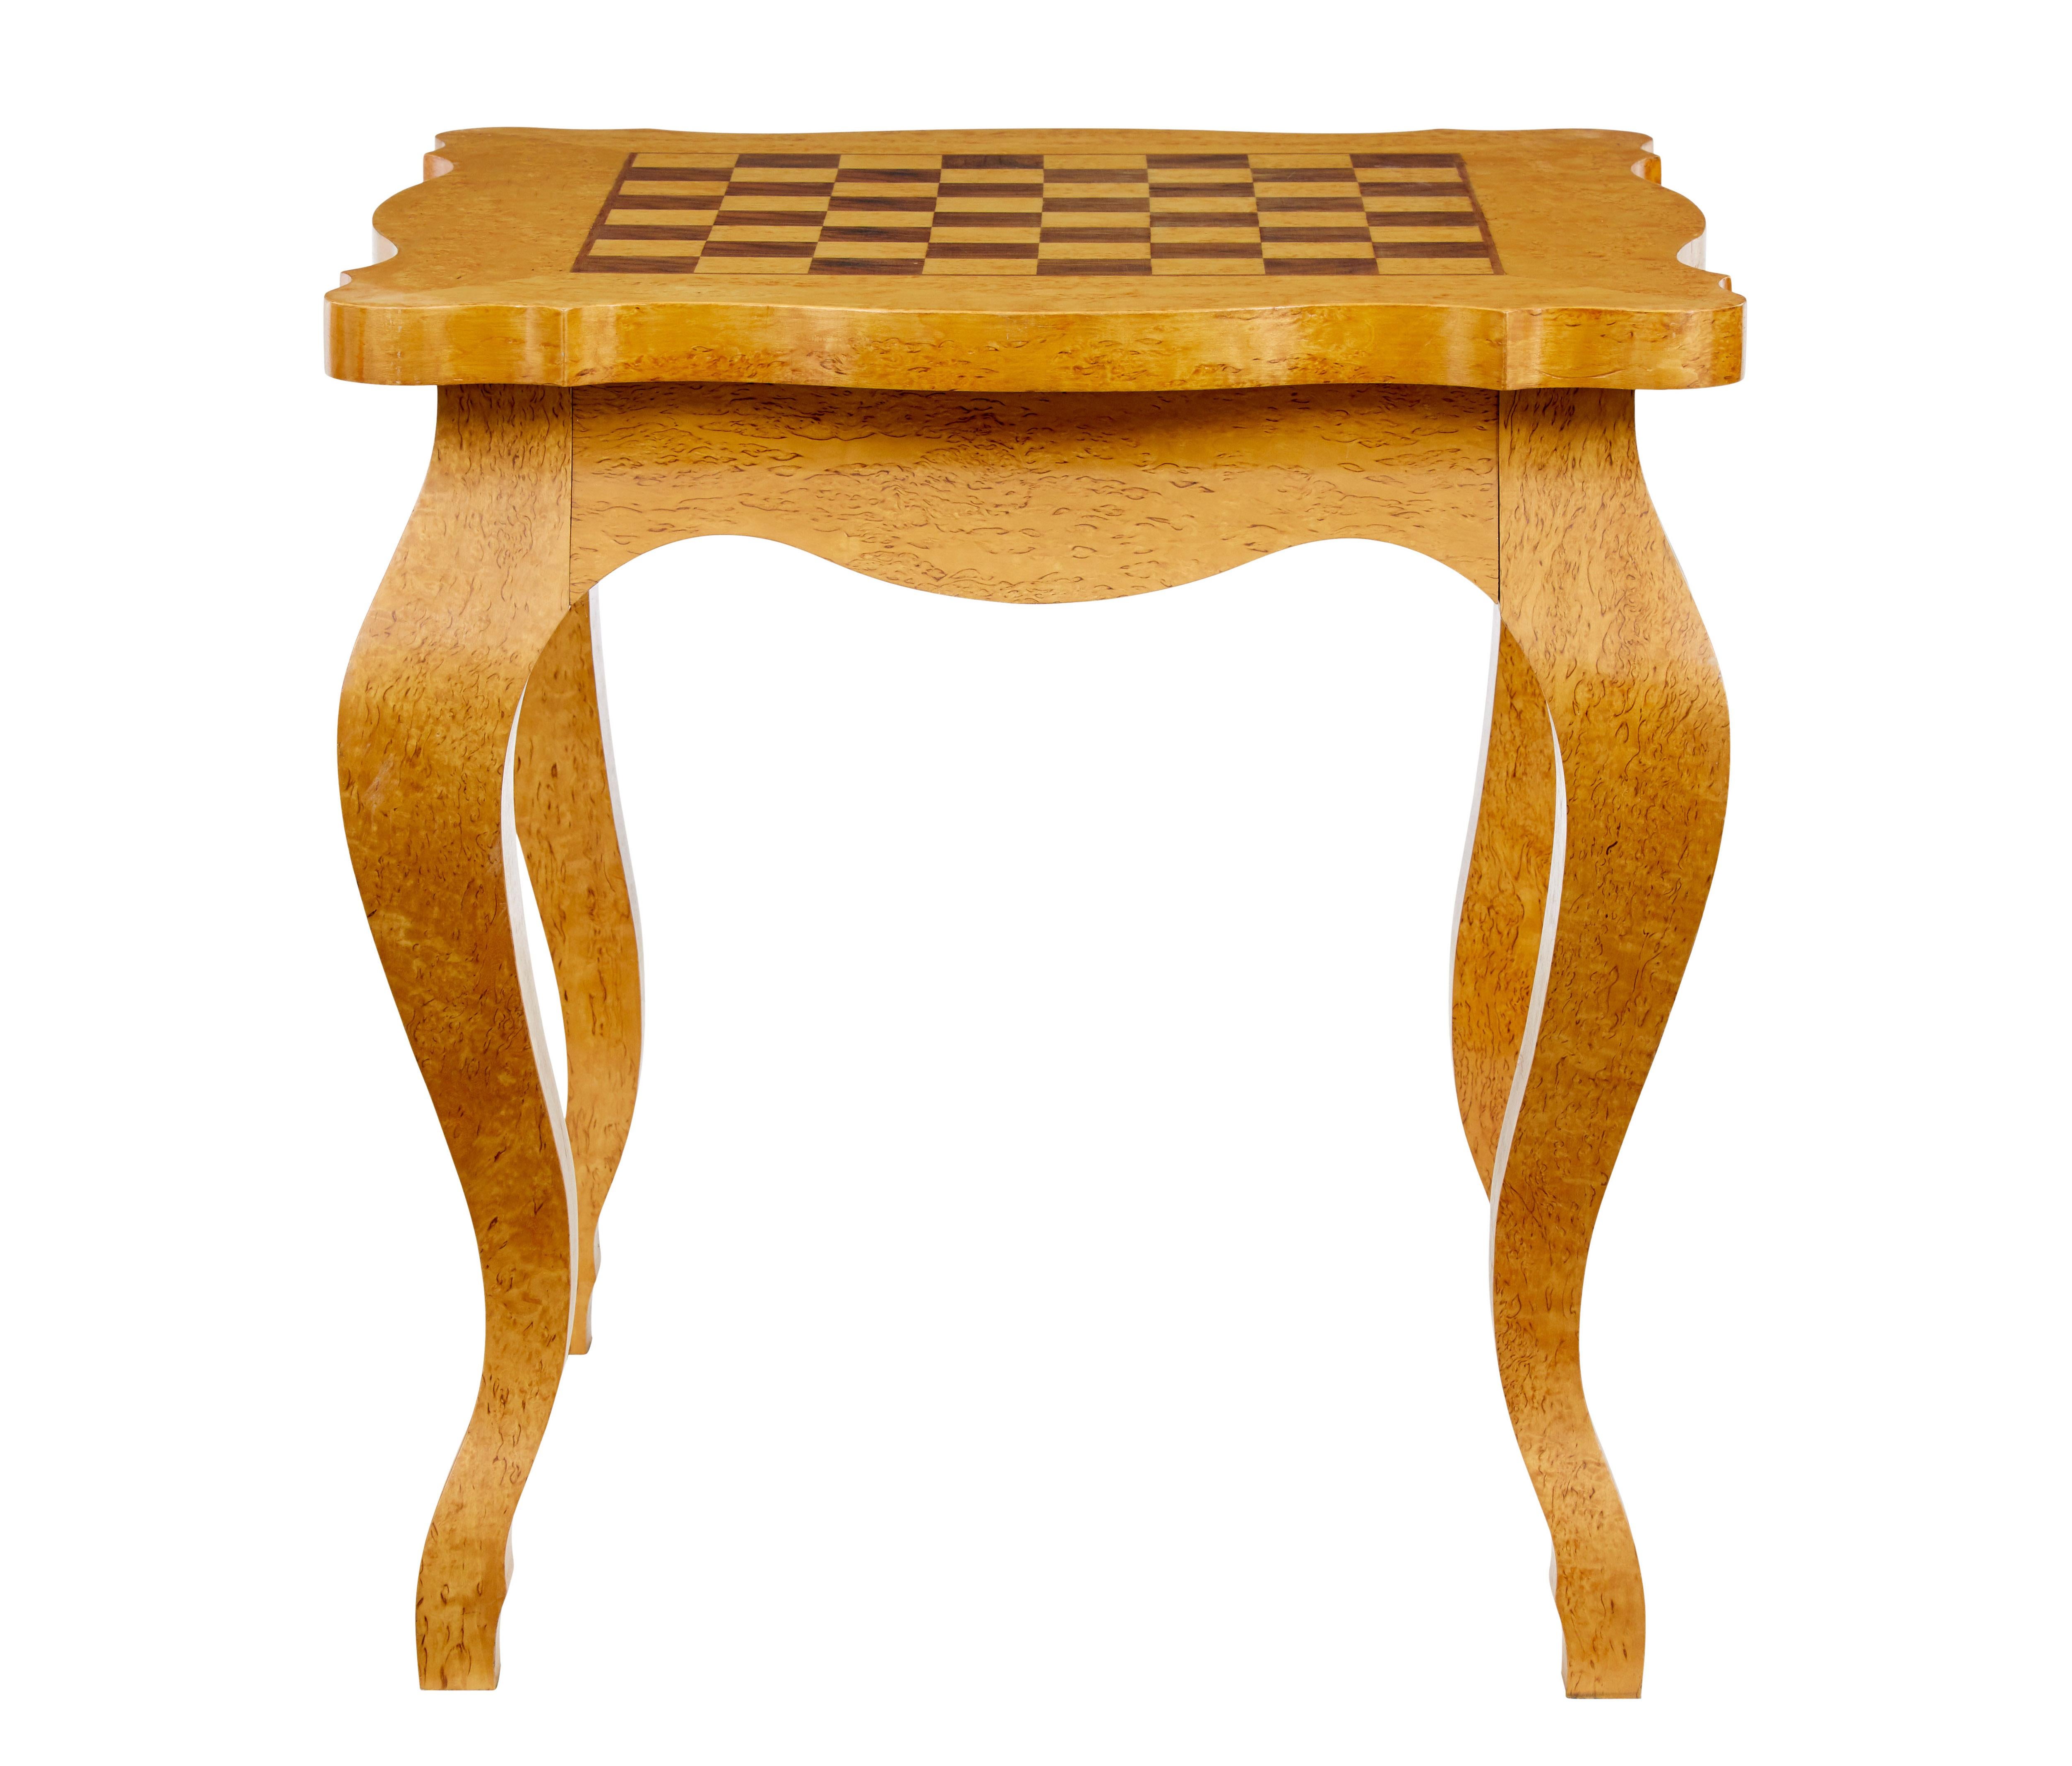 3 Stück 20. Jahrhundert Birke Spieltisch und Sessel um 1980.

Hochwertiger Spieltisch und Stühle, bestehend aus 2 Sesseln und einem Spieltisch.  Tisch mit eingelegtem Schachbrett auf der Oberseite, mit muschelförmiger Außenkante, stehend auf